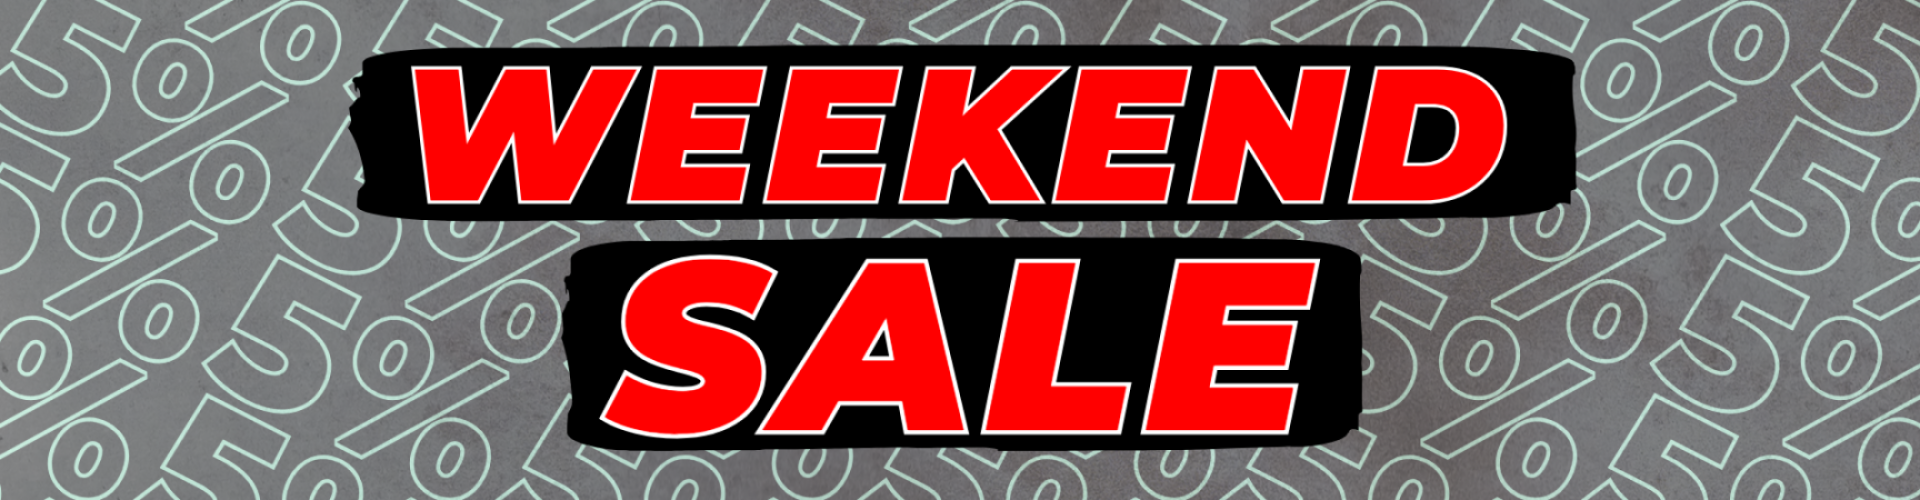 Weekend Sale 5%